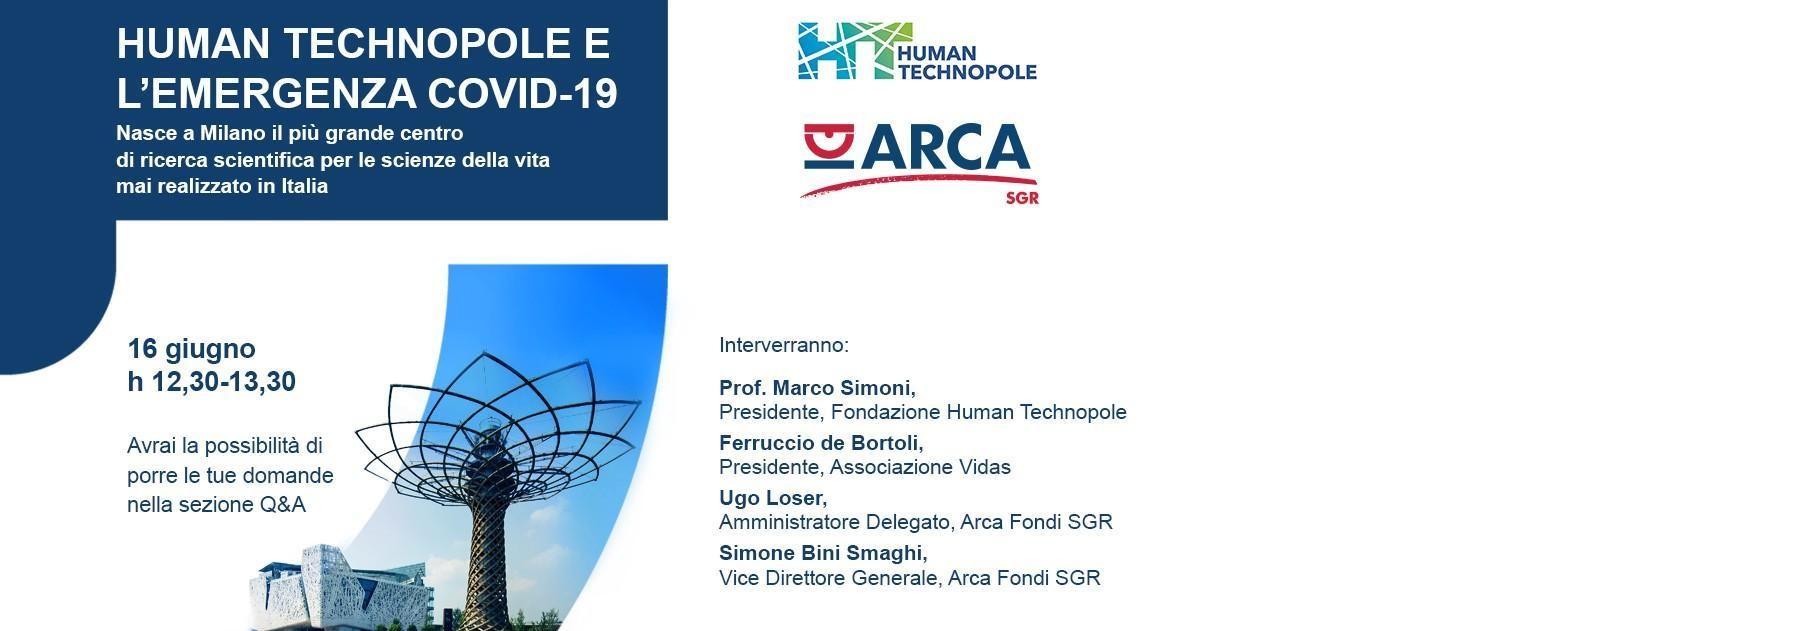 Il 16 giugno il Presidente Marco Simoni parlerà del progetto Human Technopole e del ruolo della ricerca scientifica per la ripartenza post COVID19